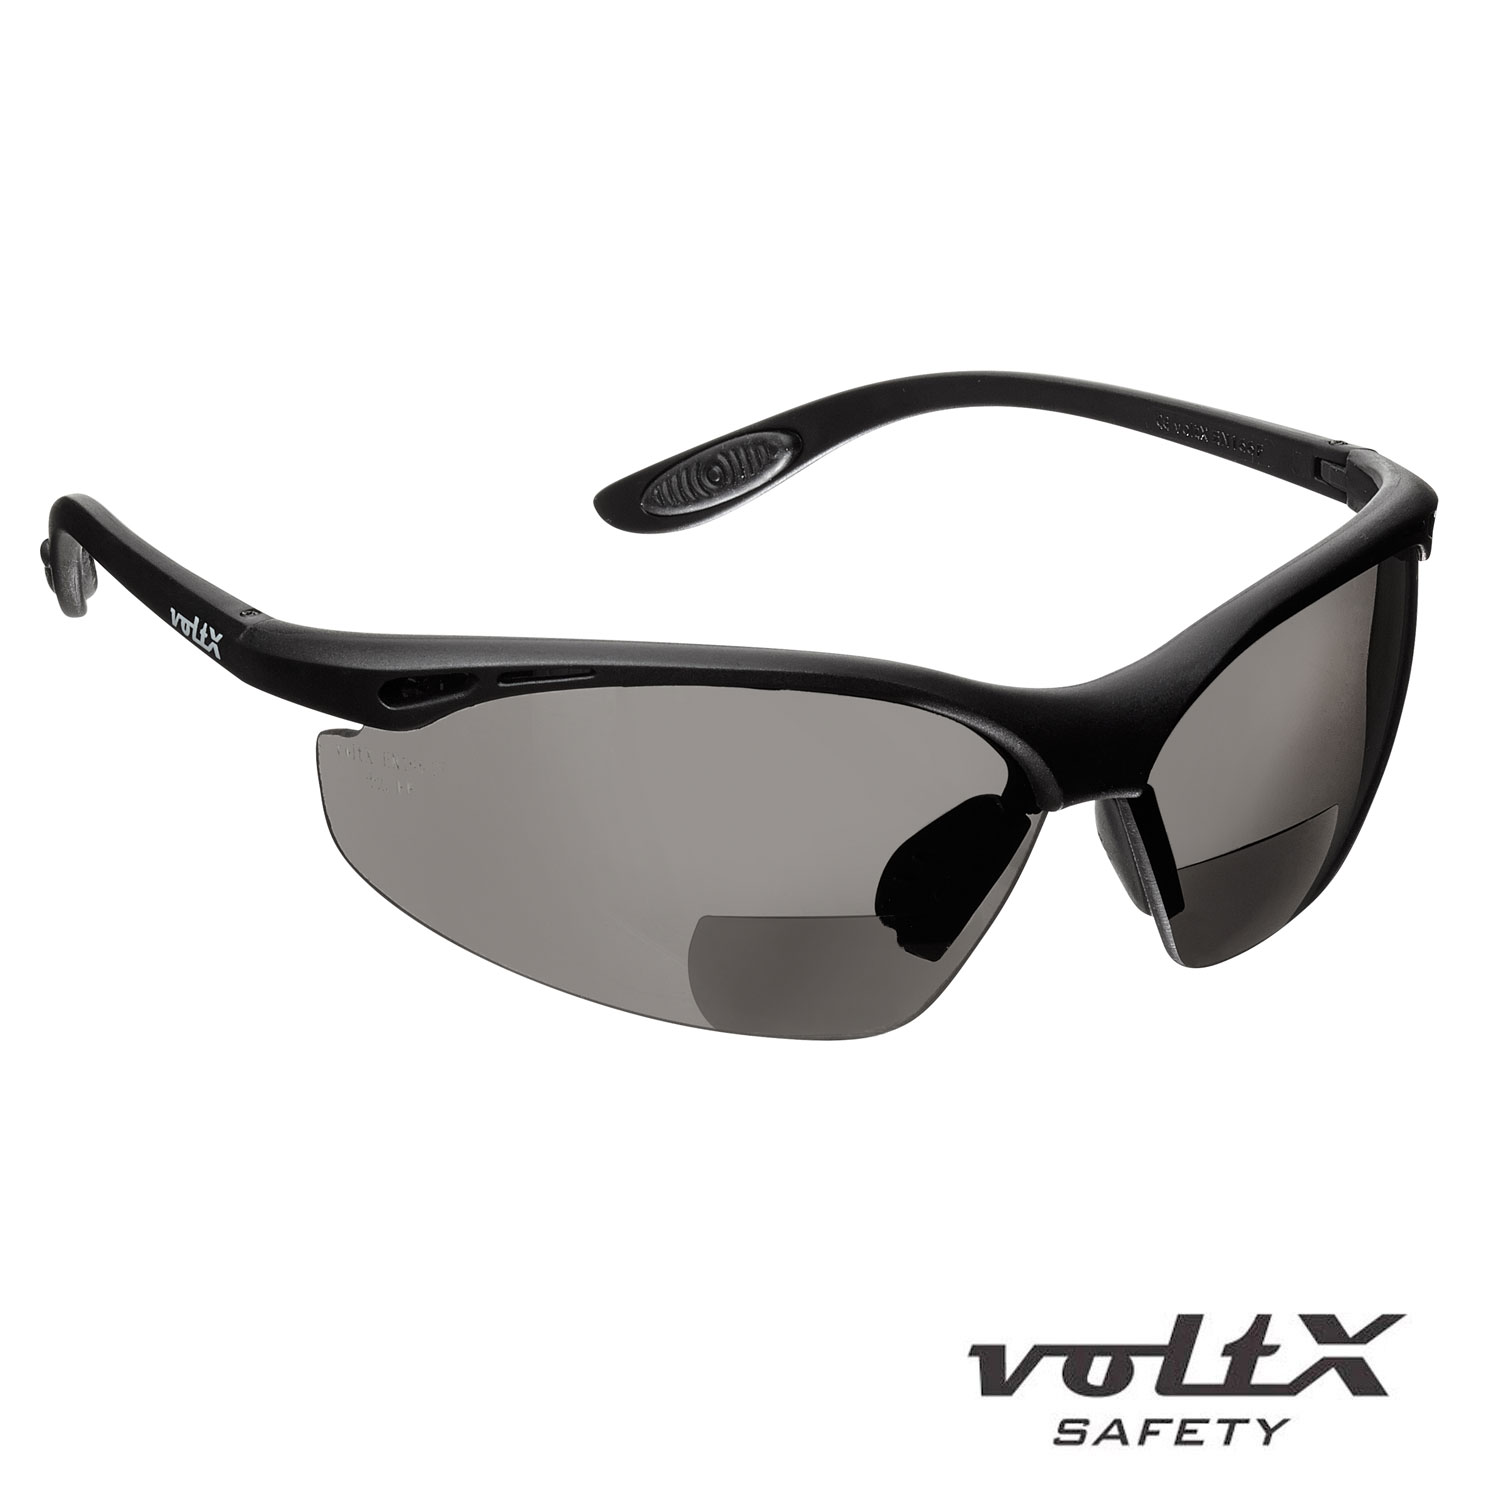 voltX Defender Safety Goggles Certificado CE EN166FT Ahumado +3.0 Gafas de Seguridad bifocales compactas y ventiladas con Revestimiento antiempañamiento 